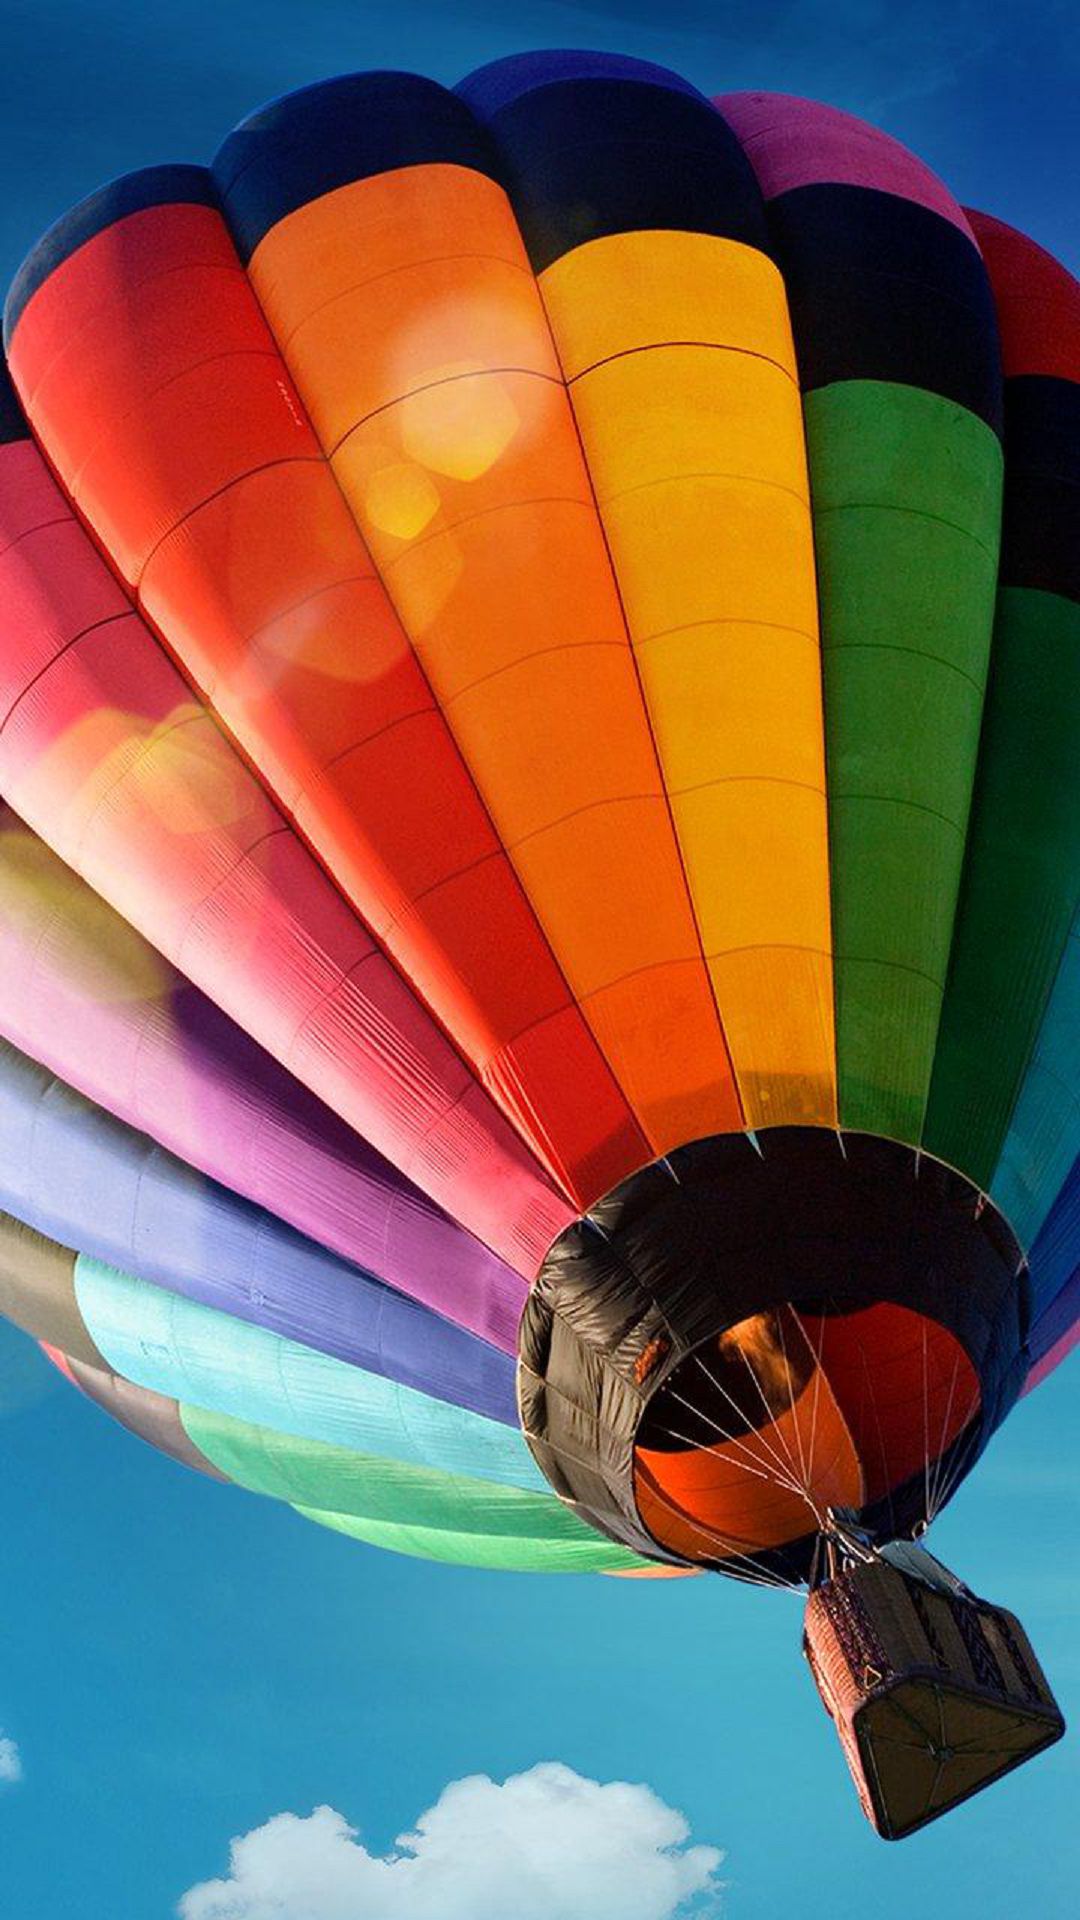 Colorful Hot Air Balloons Wallpaper - WallpaperSafari